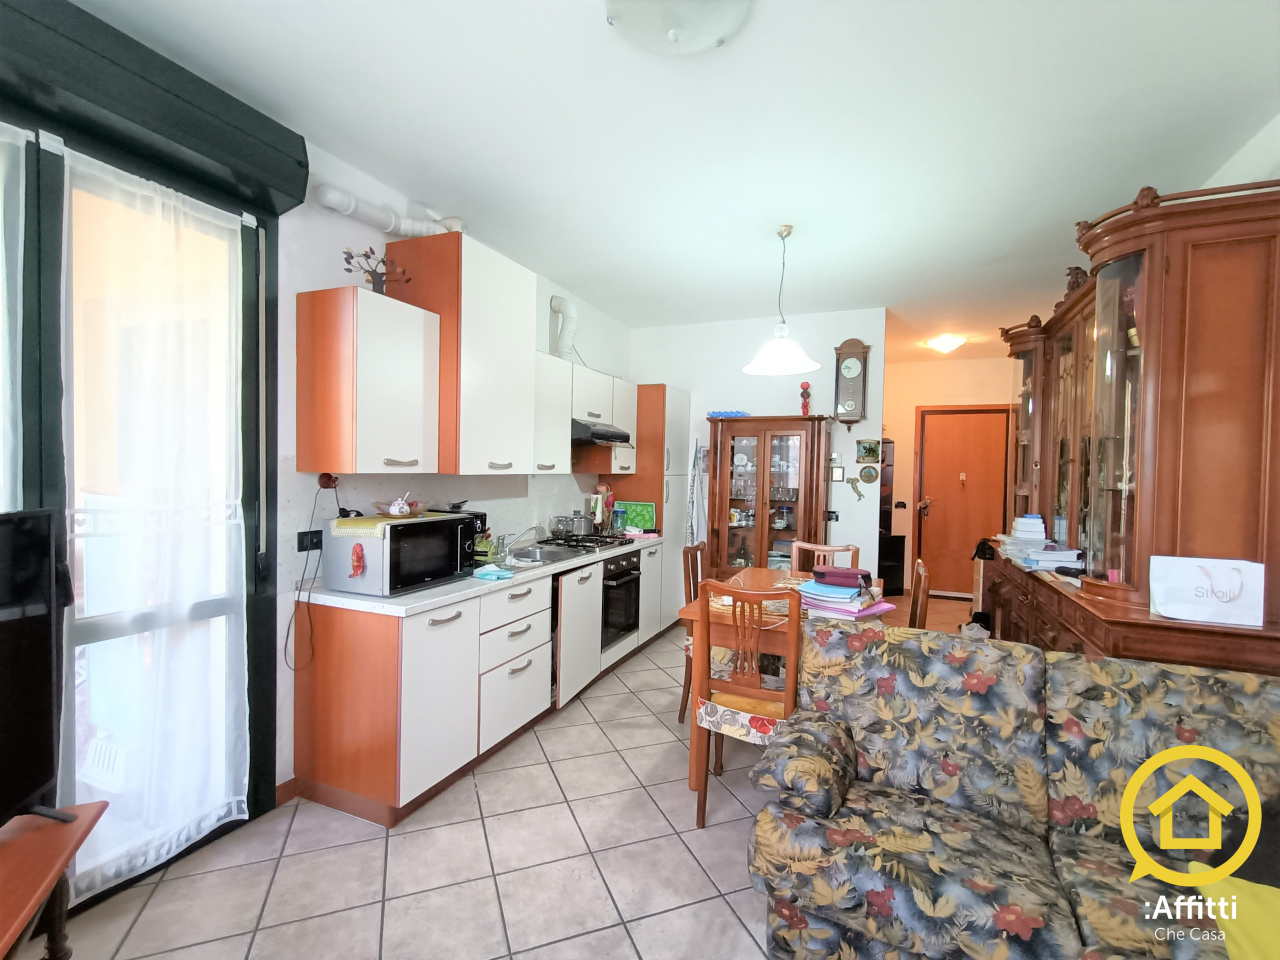 Appartamento in affitto a Bellaria Igea Marina, 3 locali, prezzo € 600 | CambioCasa.it